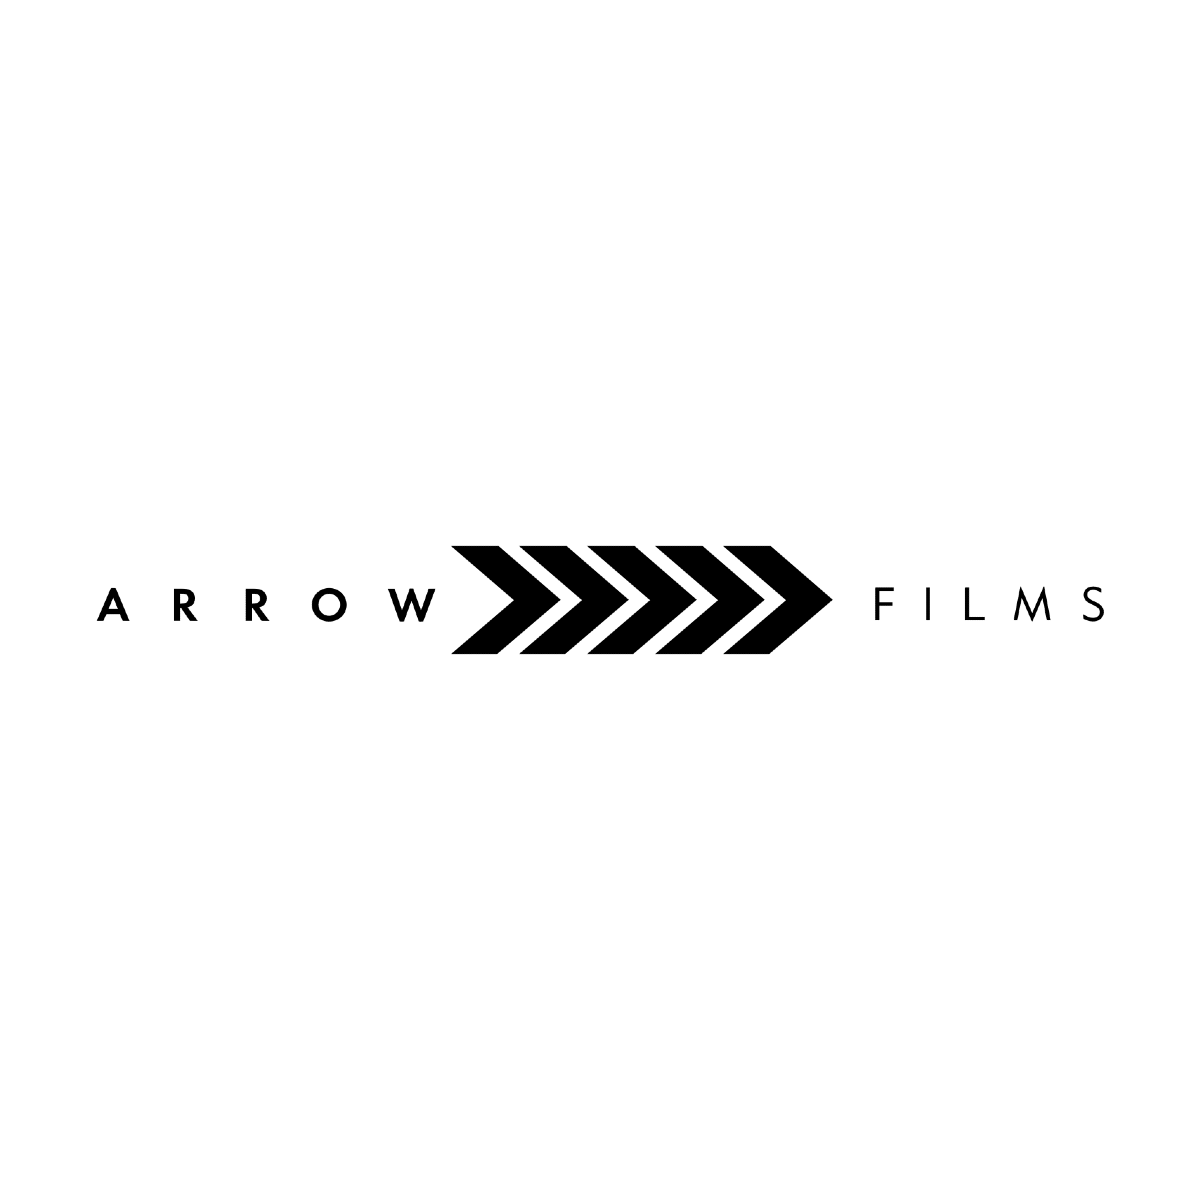 www.arrowvideo.com